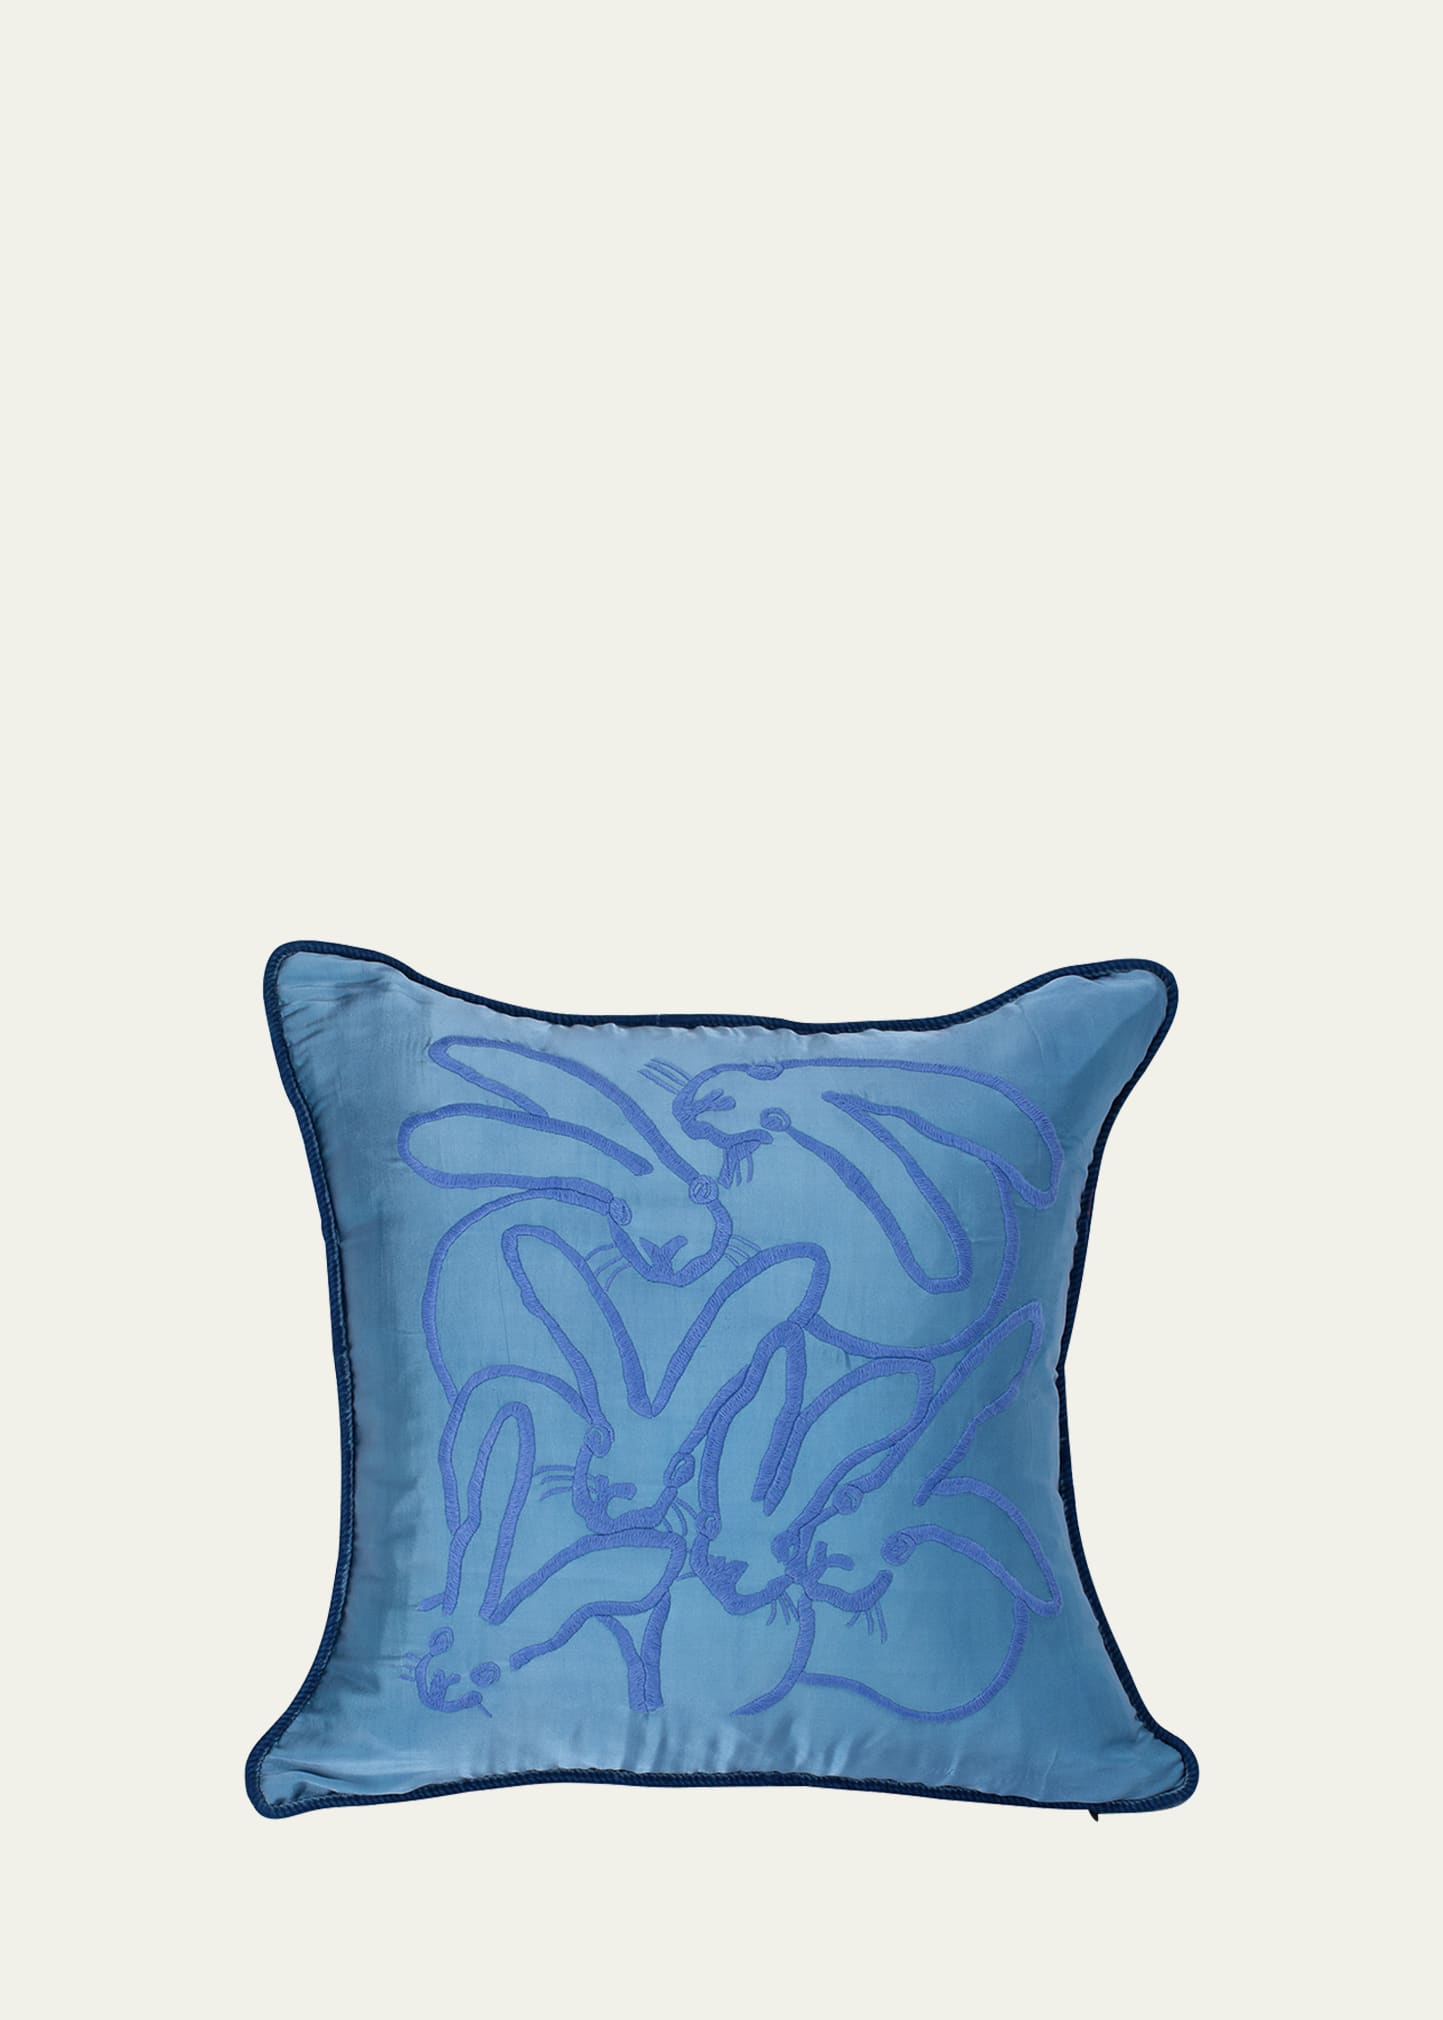 Embroidered Silk & Velvet Seven Bunny Pillow, 22"